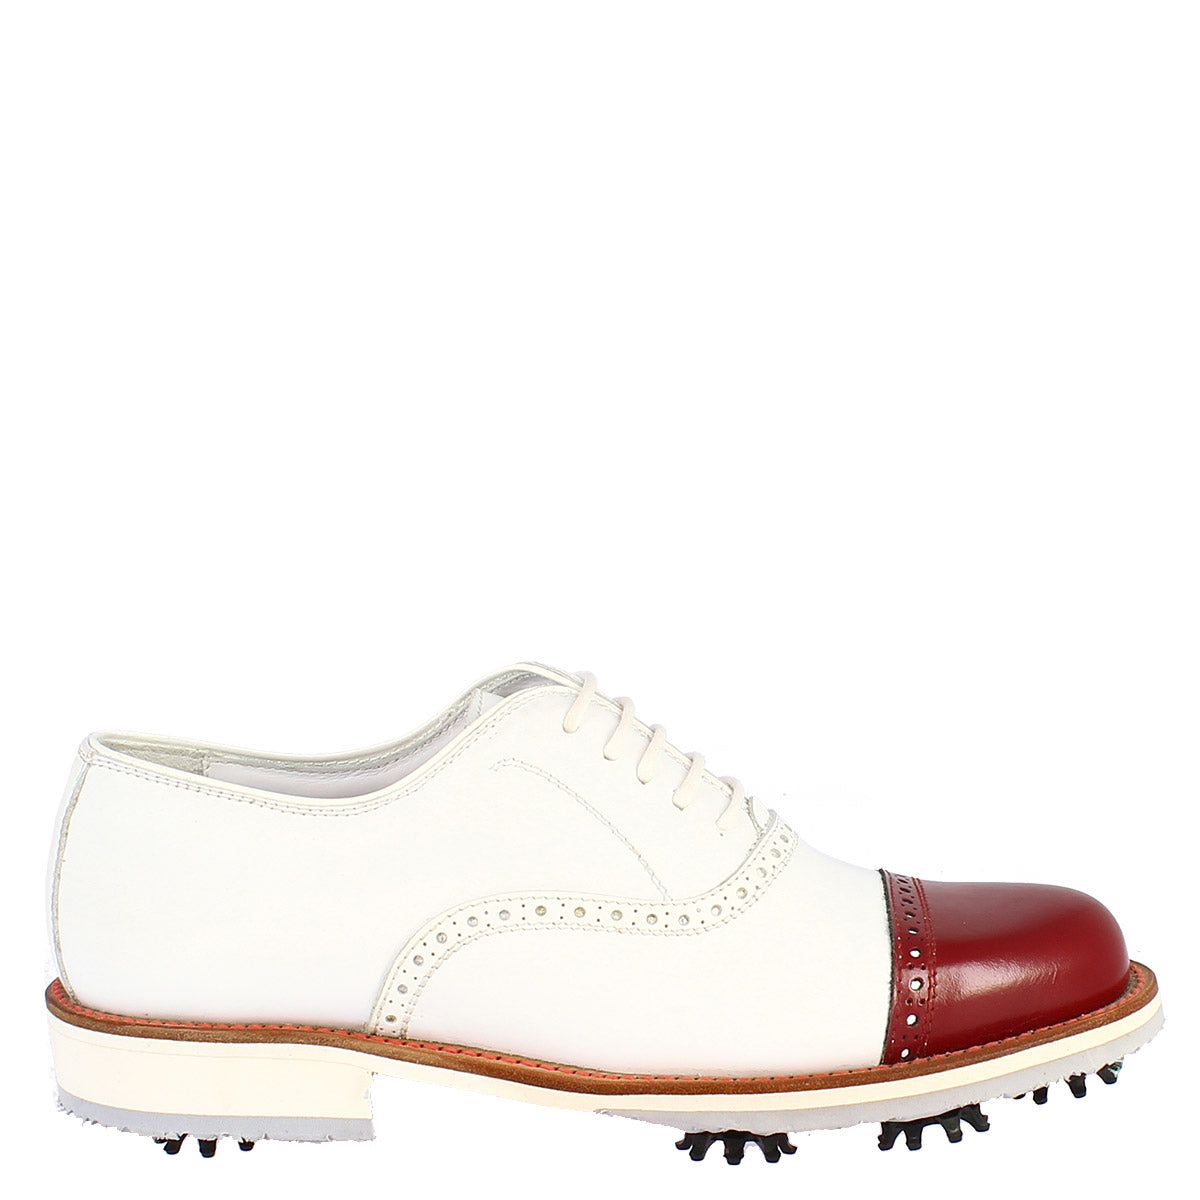 Handgefertigte Damen-Golfschuhe aus weißem Leder mit roter Zehenkappe